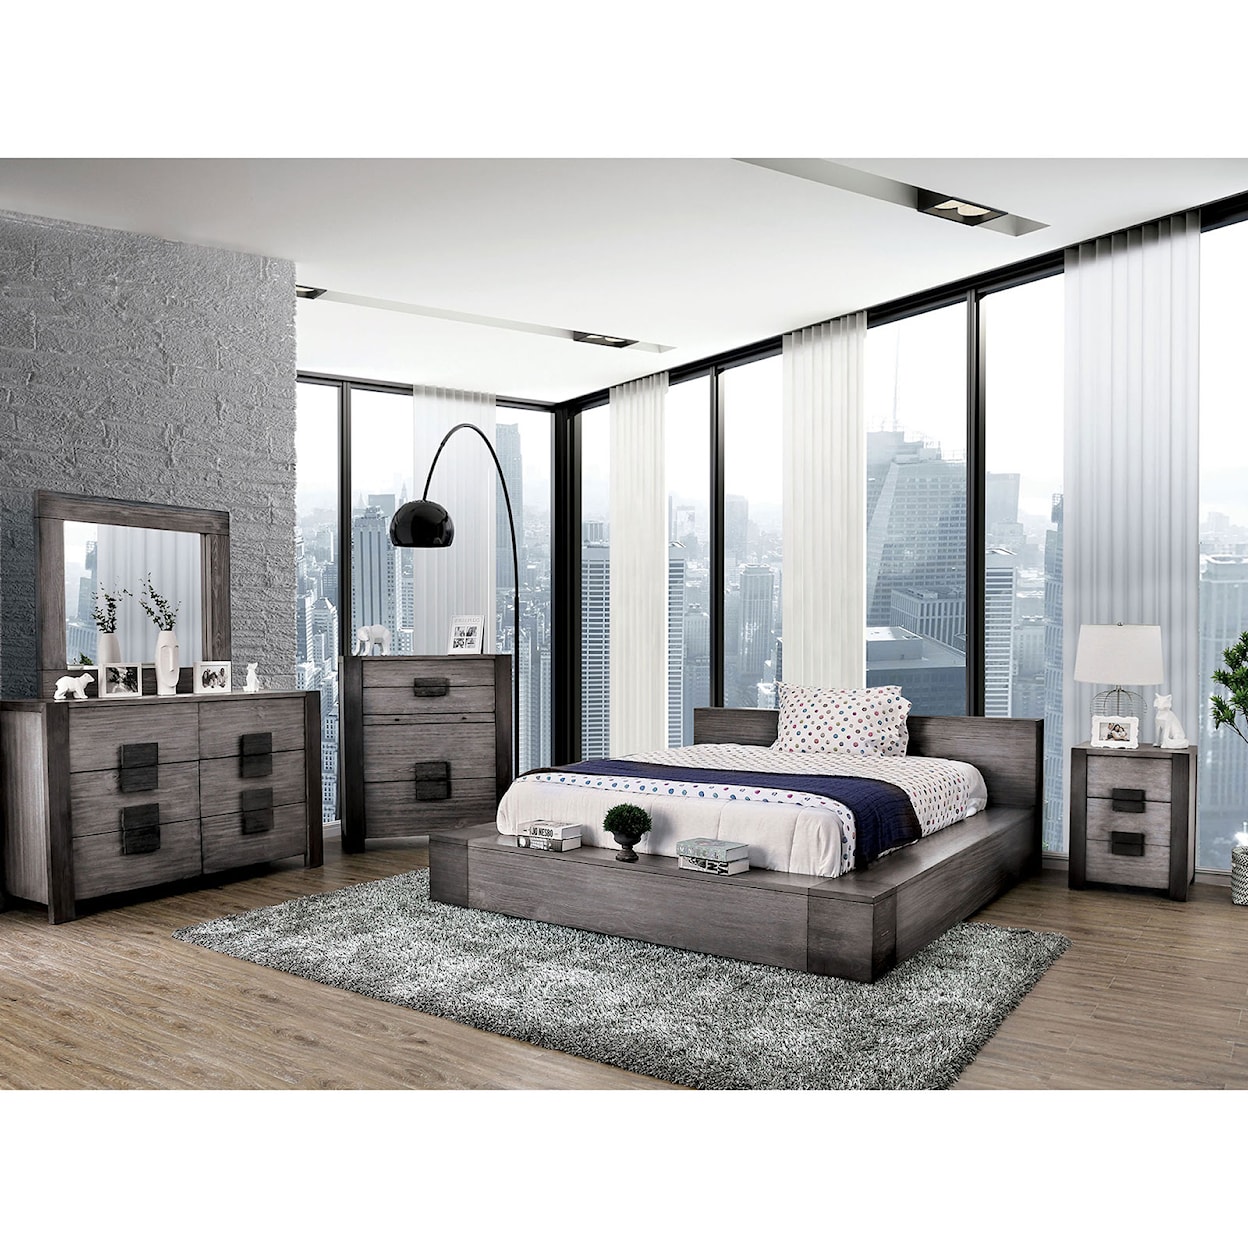 Furniture of America Janeiro 5-Piece Queen Bedroom Set